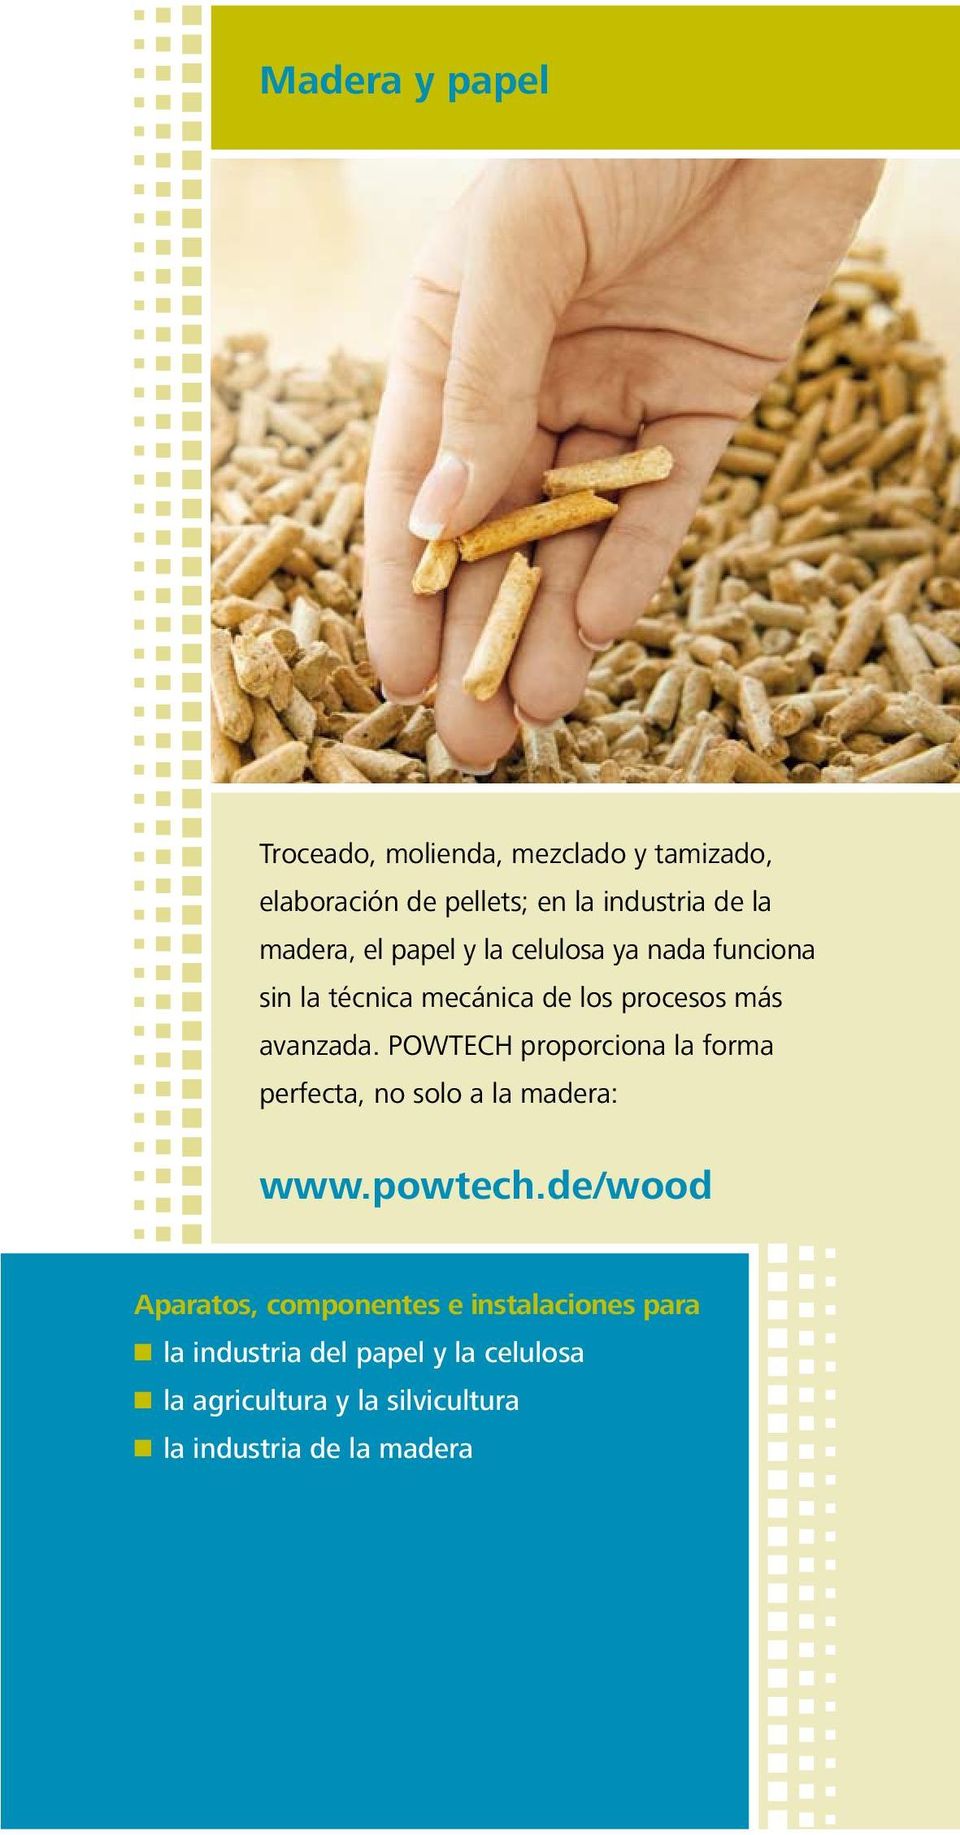 POWTECH proporciona la forma perfecta, no solo a la madera: www.powtech.